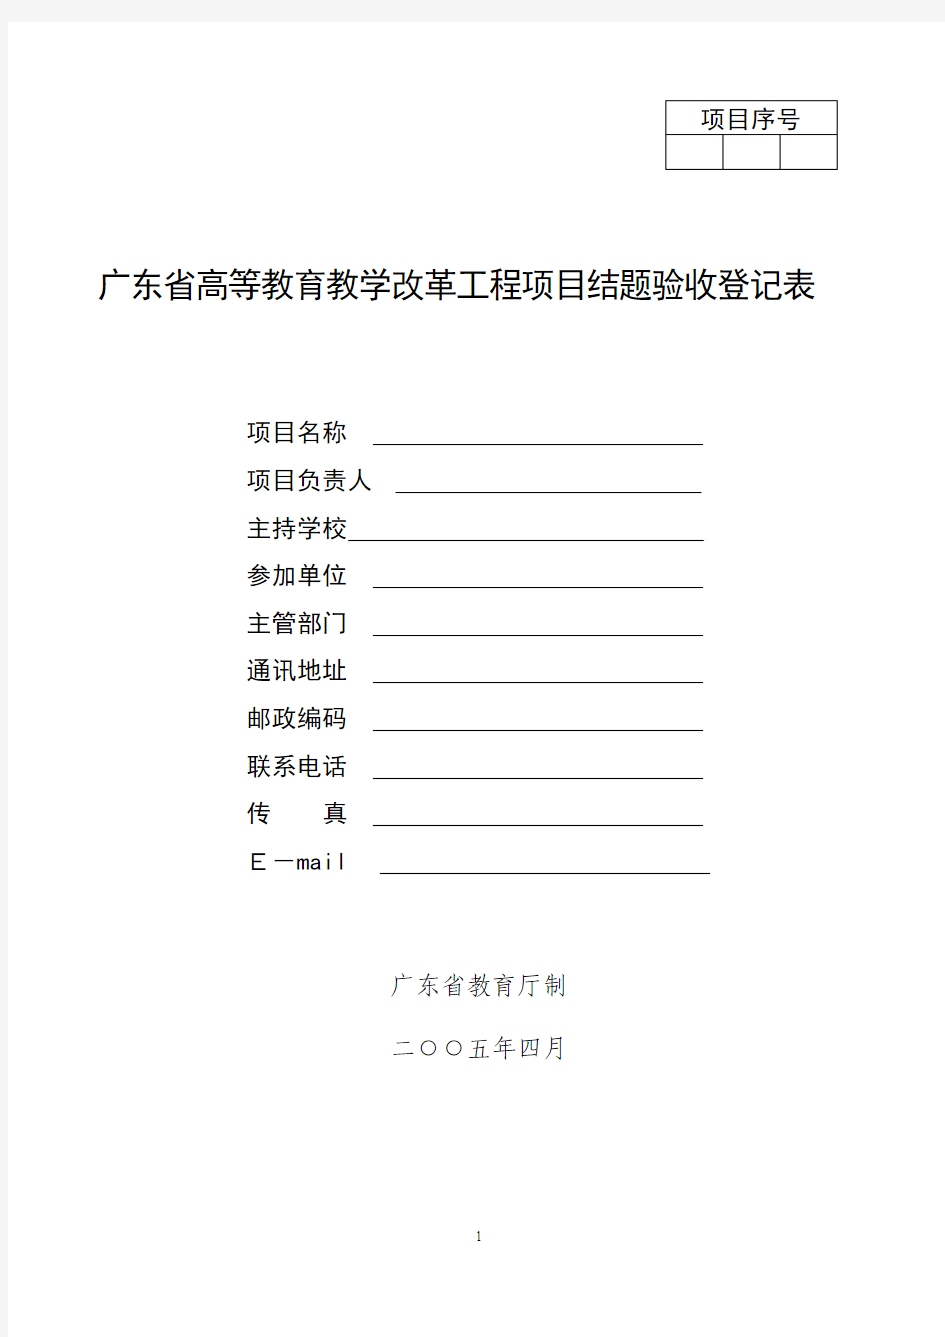 广东省高等教育教学改革工程项目结题验收登记表(2014)